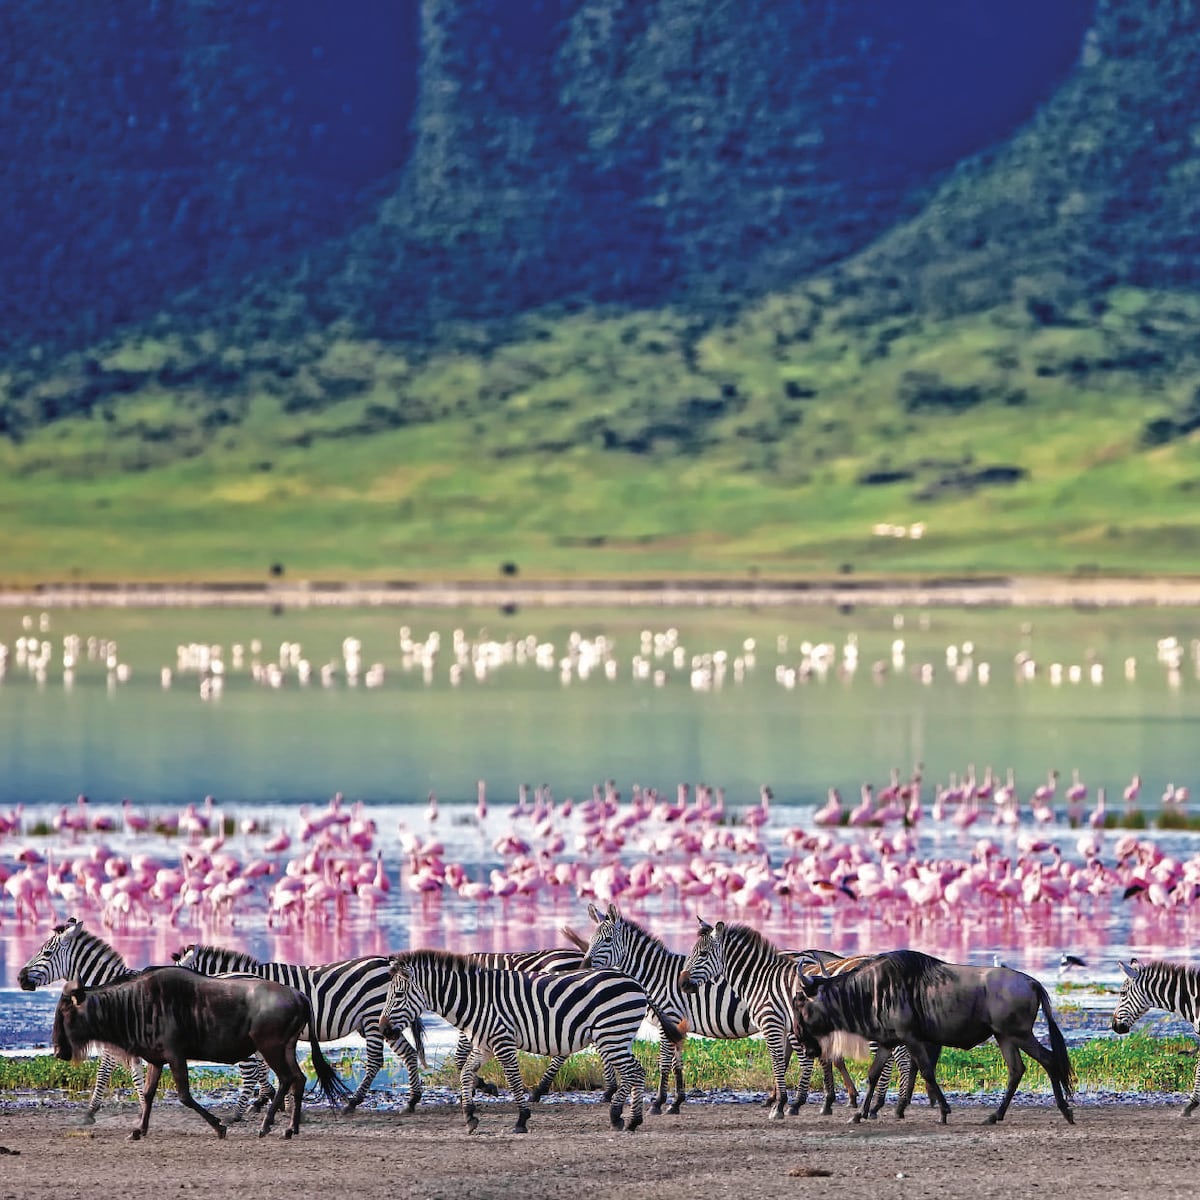 Tanzanie safari tour du monde